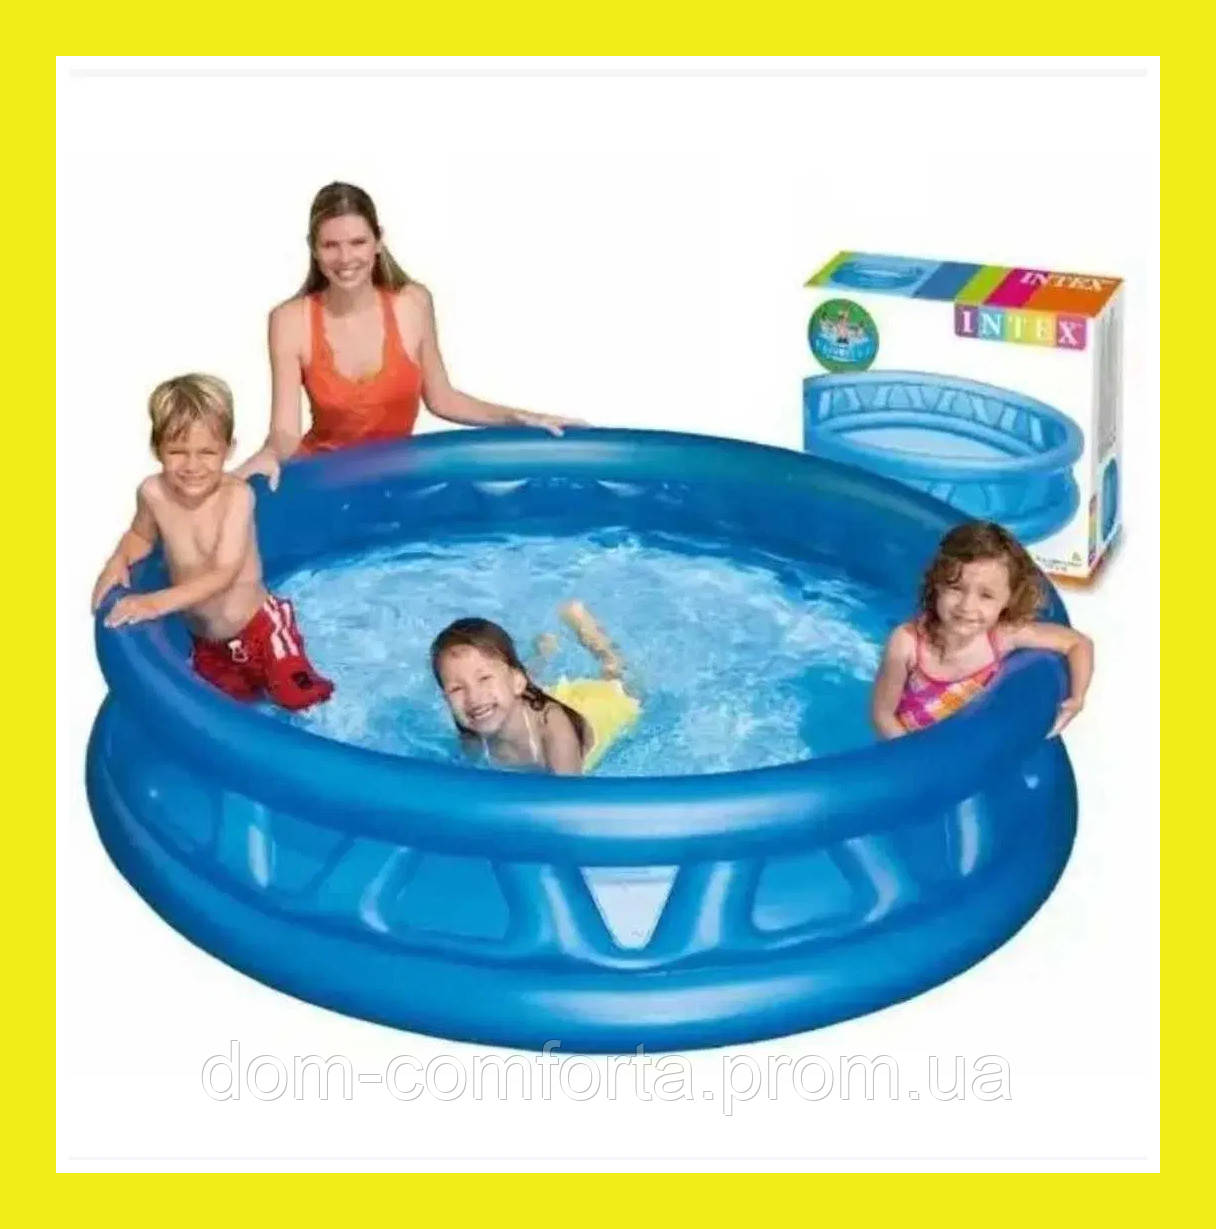 Дитячий надувний басейн Intex, дитячі надувні басейни інтекс для дітей, круглий басейн для дому та дачі DL